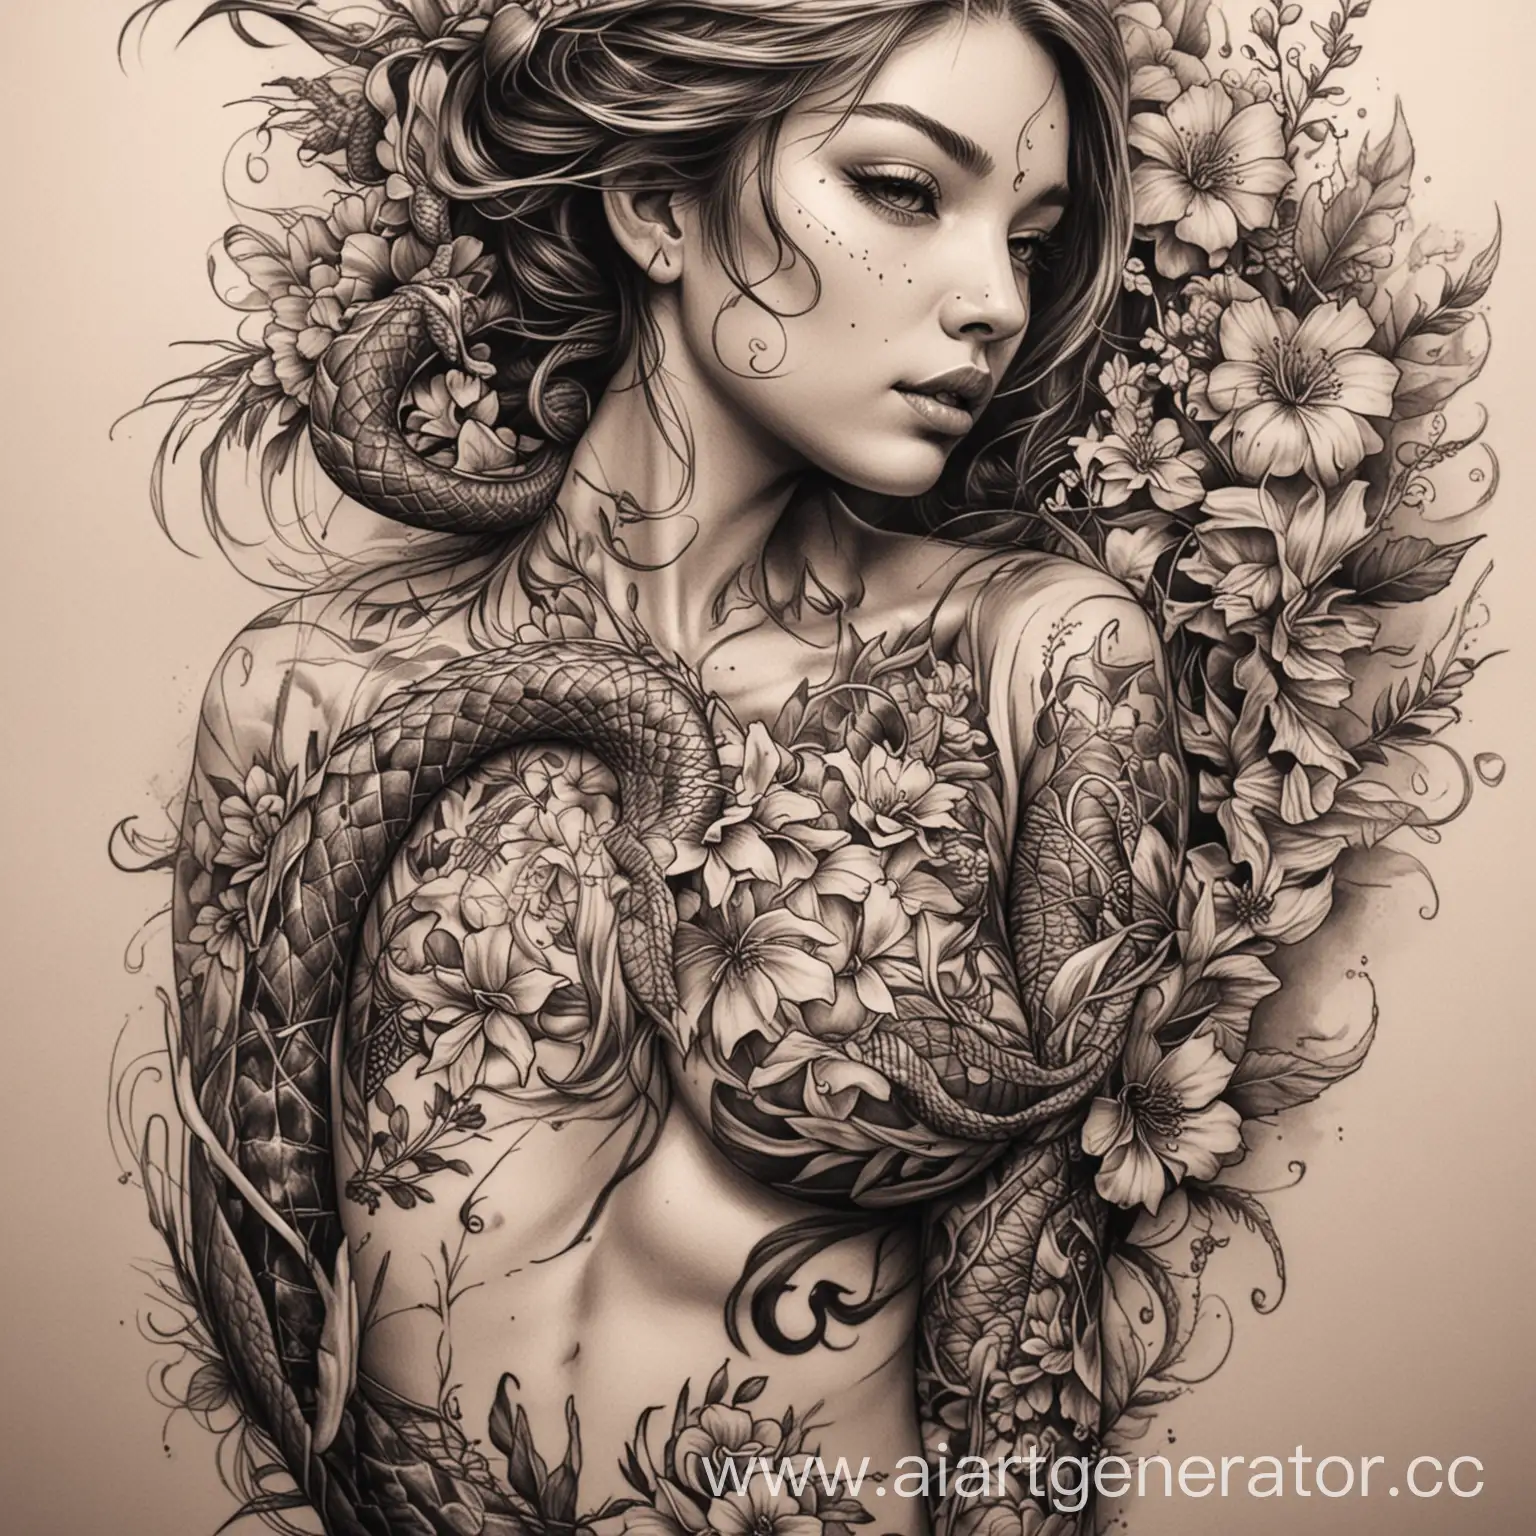 эскиз татуировки на бедре с длинным змеиным драконом который обвивает девушку в цветах